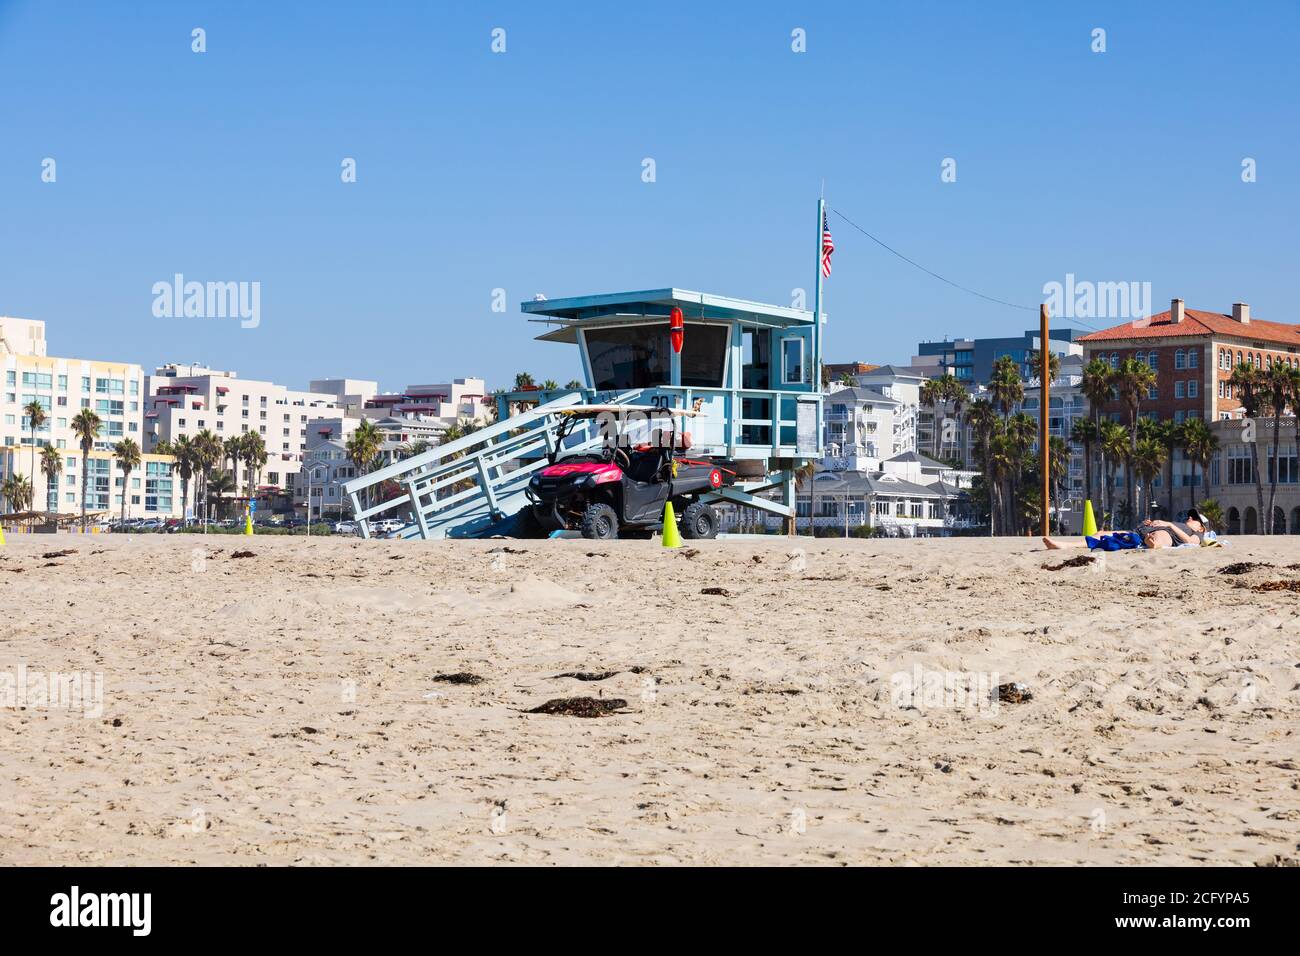 Rettungsschwimmer Hütte am Strand von Santa Monica, Kalifornien, Vereinigte Staaten von amerika. USA. Oktober 2019 Stockfoto